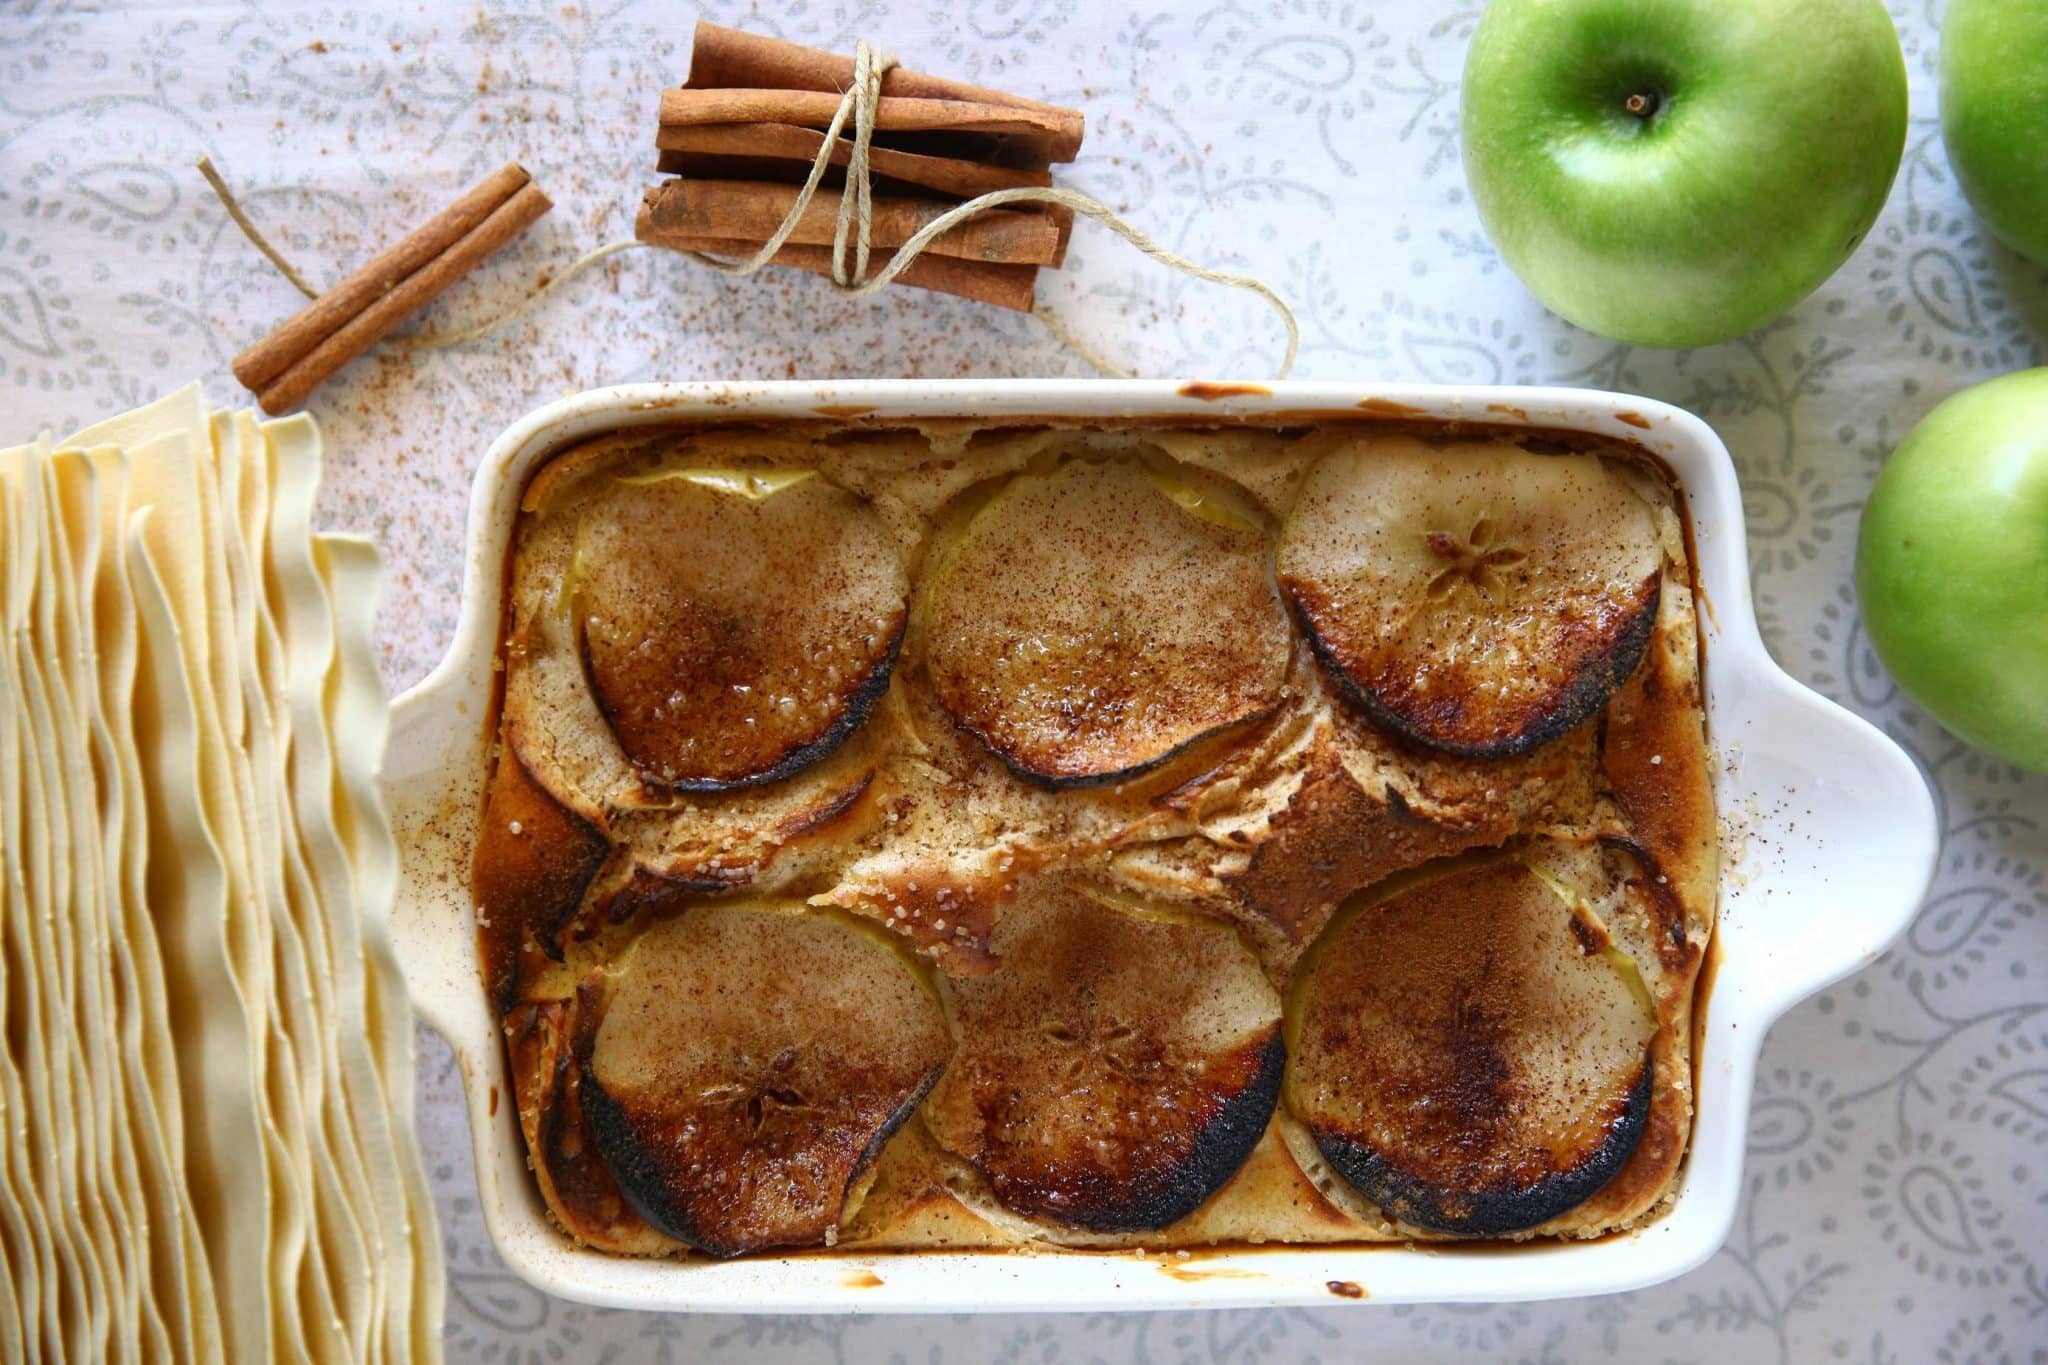 פורסים את תפוחי העץ לפרוסות בעובי 2-3 מ"מ. מטגנים אותן במחבת עם מעט חמאה מומסת וסוכר חום. צילום ברילה